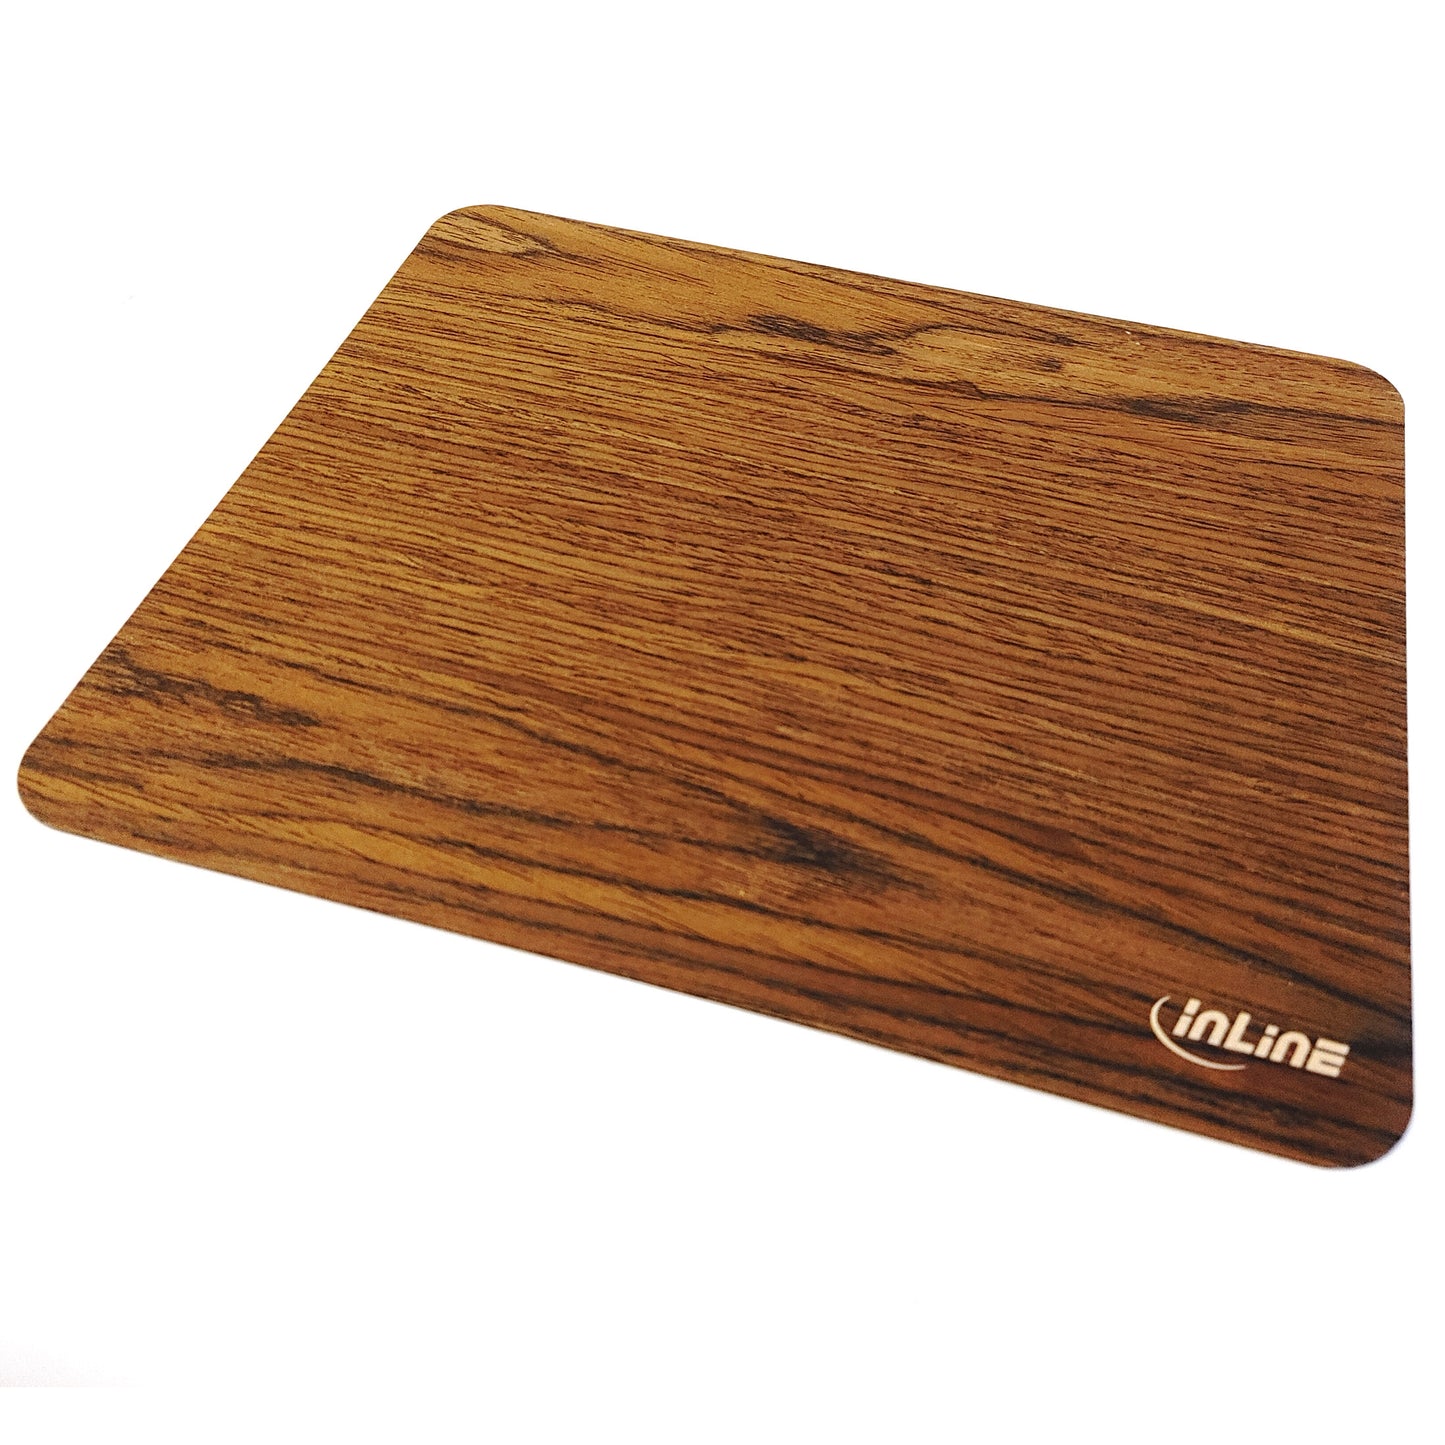 Echtholz Mauspad Walnuss Holz Mousepad WoodPad Rutschfest Mausmatte Flach Design